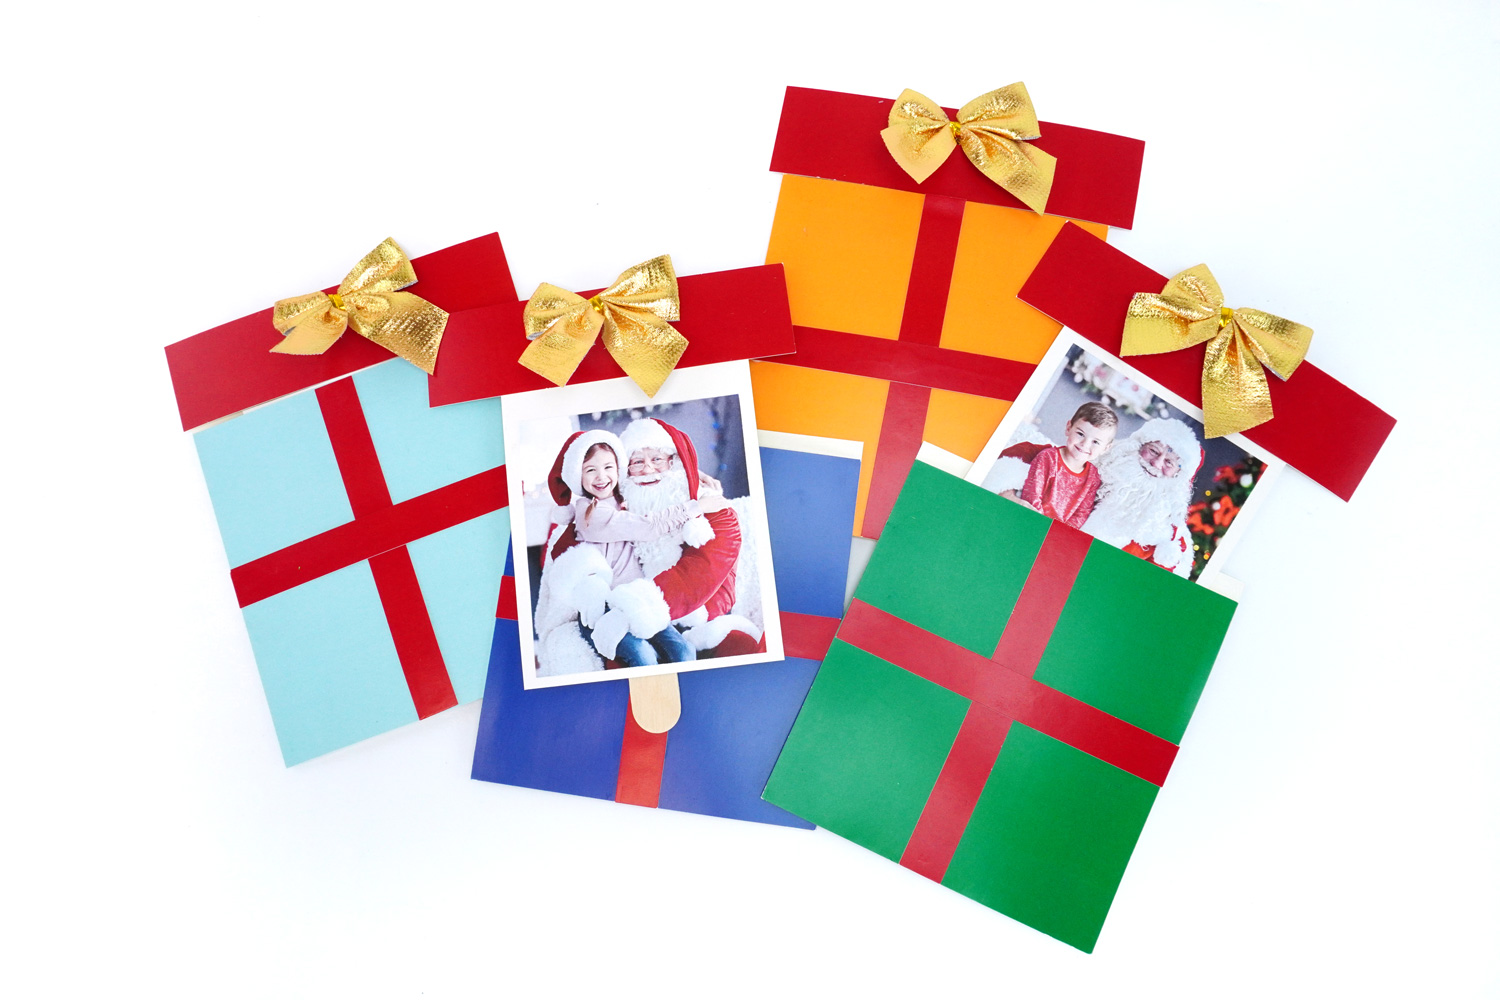 Achetez en gros Enveloppe Cadeau, Porte-carte Papier Personnalisé